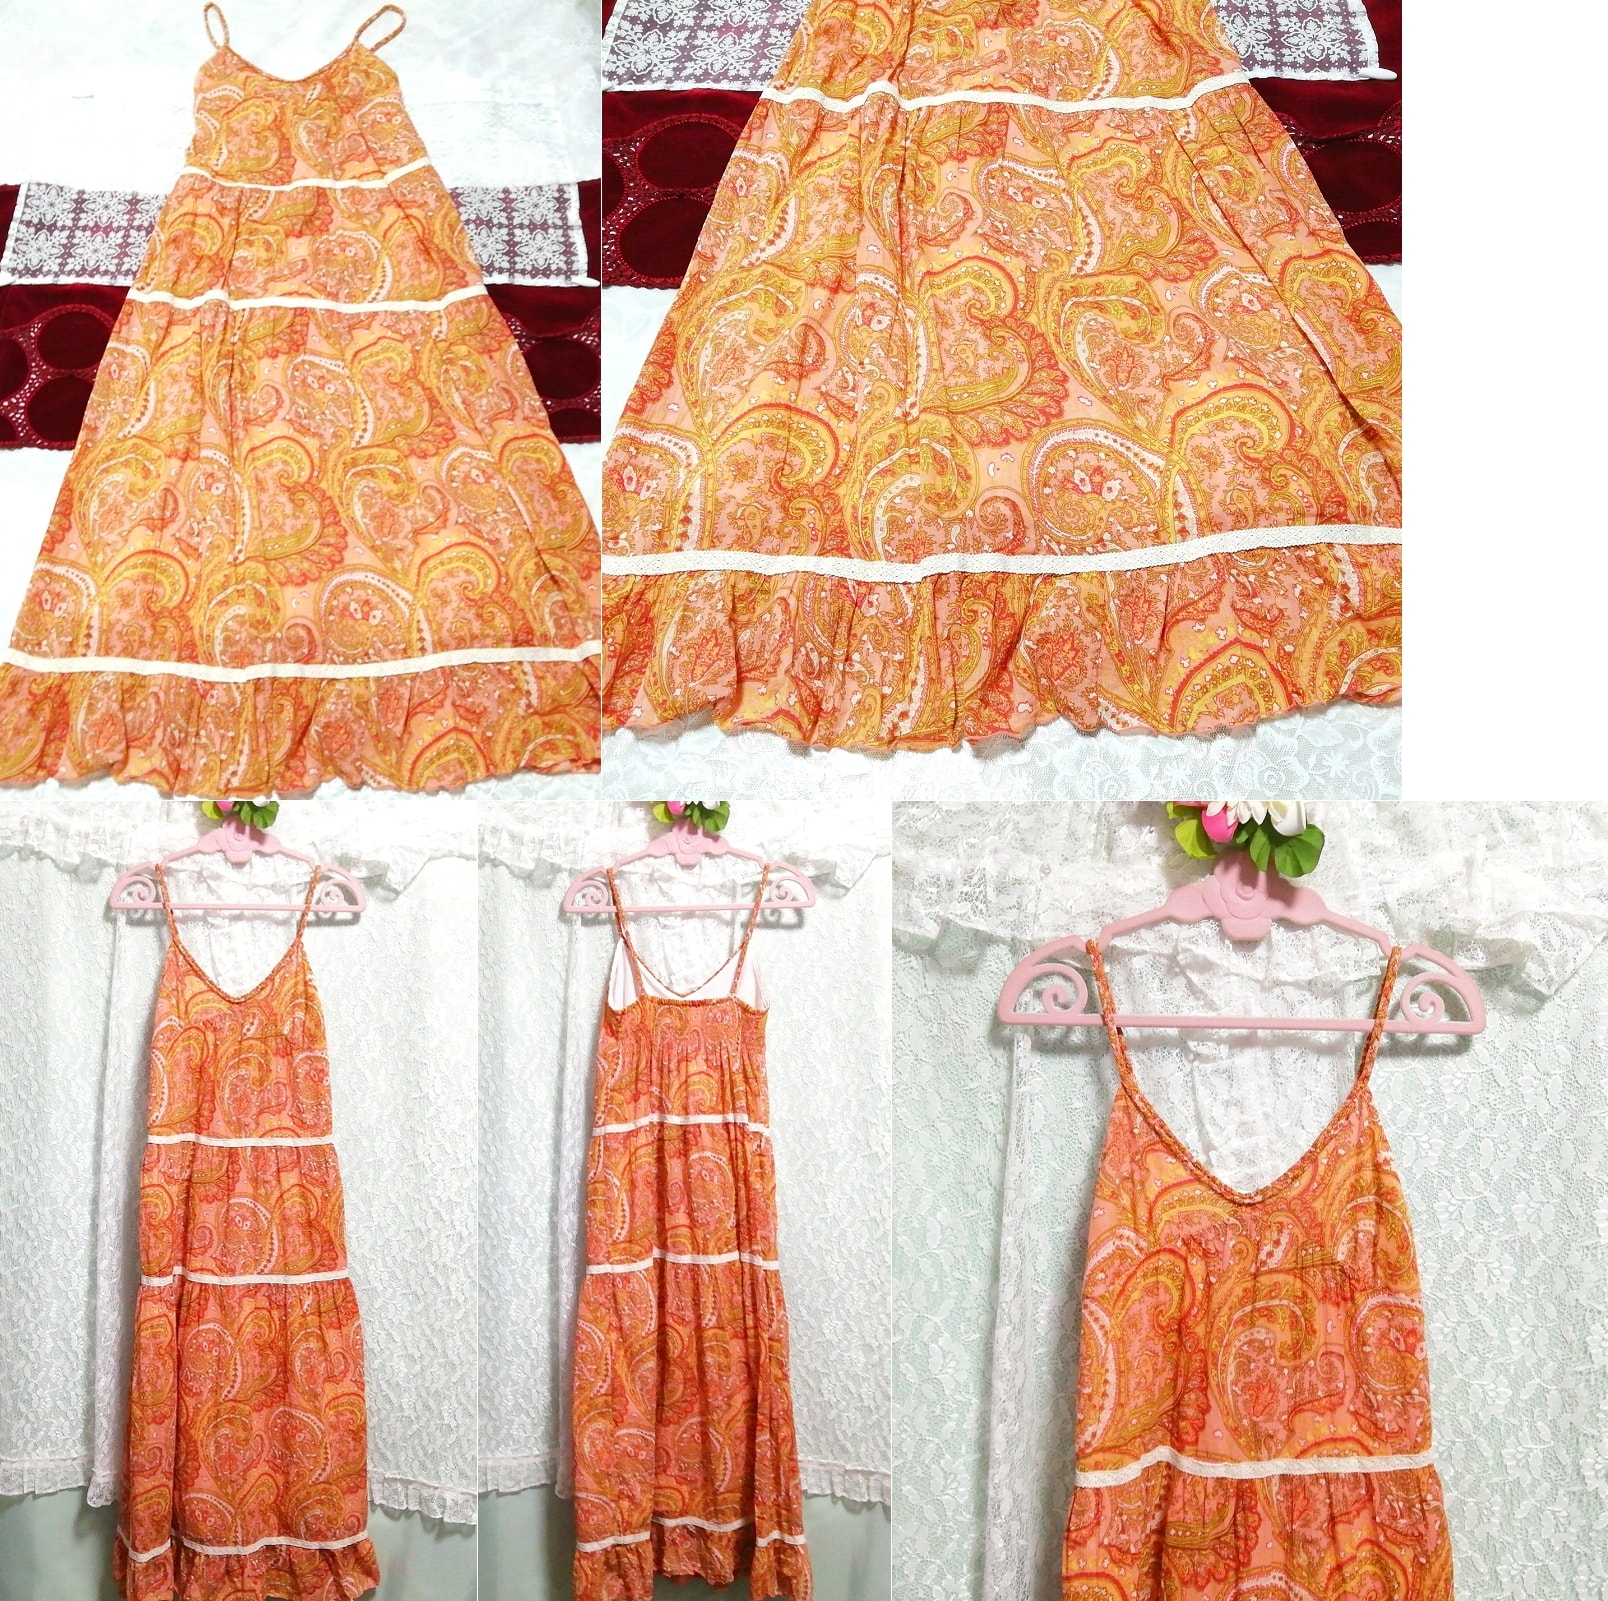 Оранжево-оранжевый хлопковый пеньюар с этническим узором, ночная рубашка, камзол, юбка, платье макси, длинная юбка, размер м